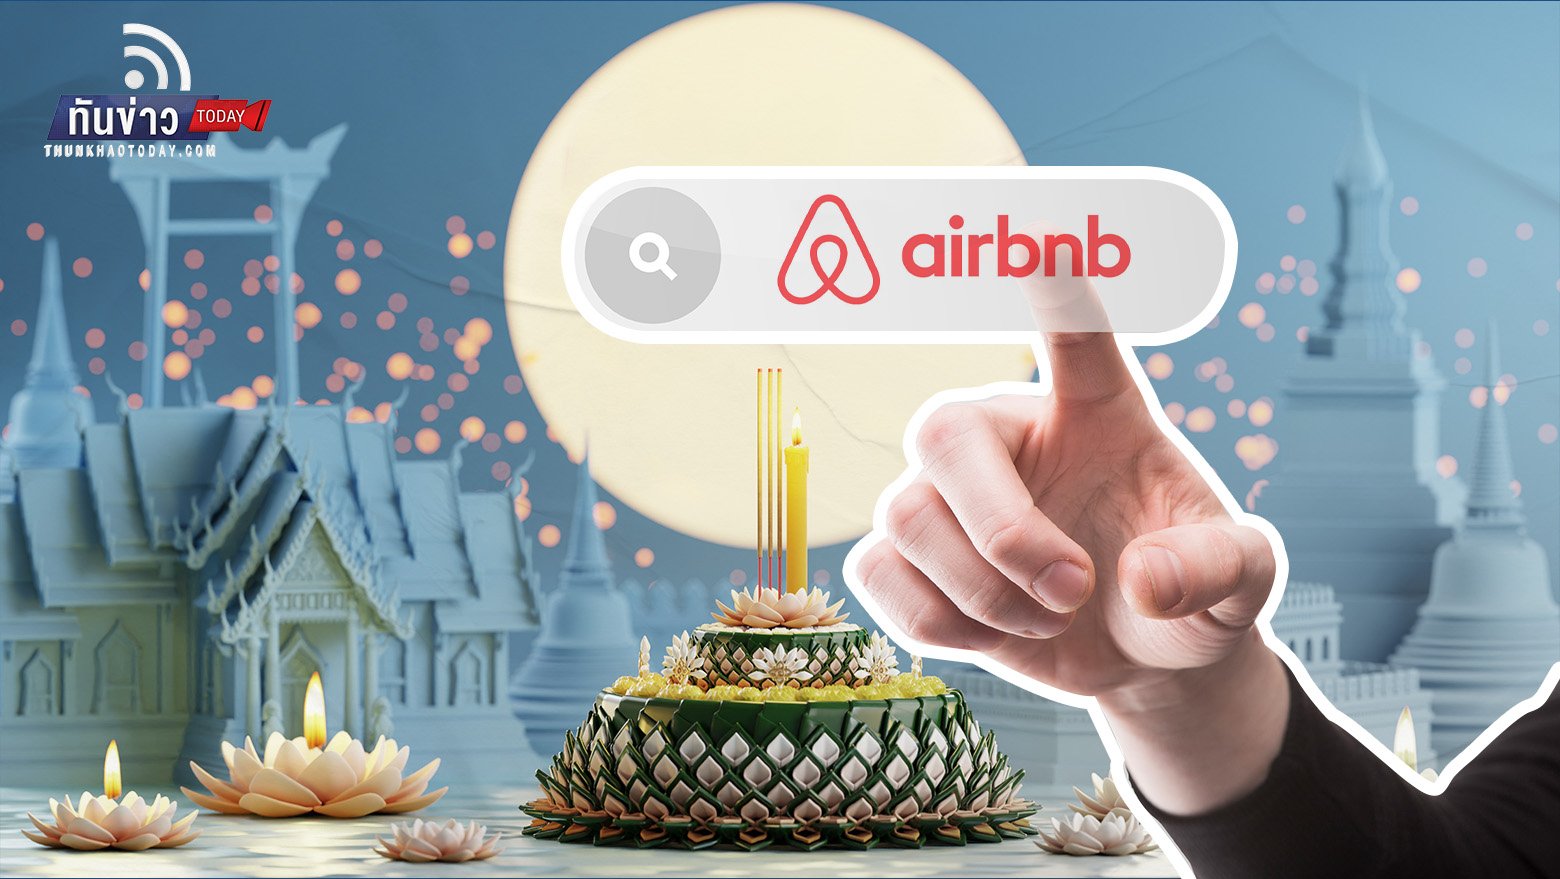 ลอยกระทงฟีเวอร์ กทม. มียอดค้นหาอันดับ 1 บนแพลตฟอร์ม Airbnb